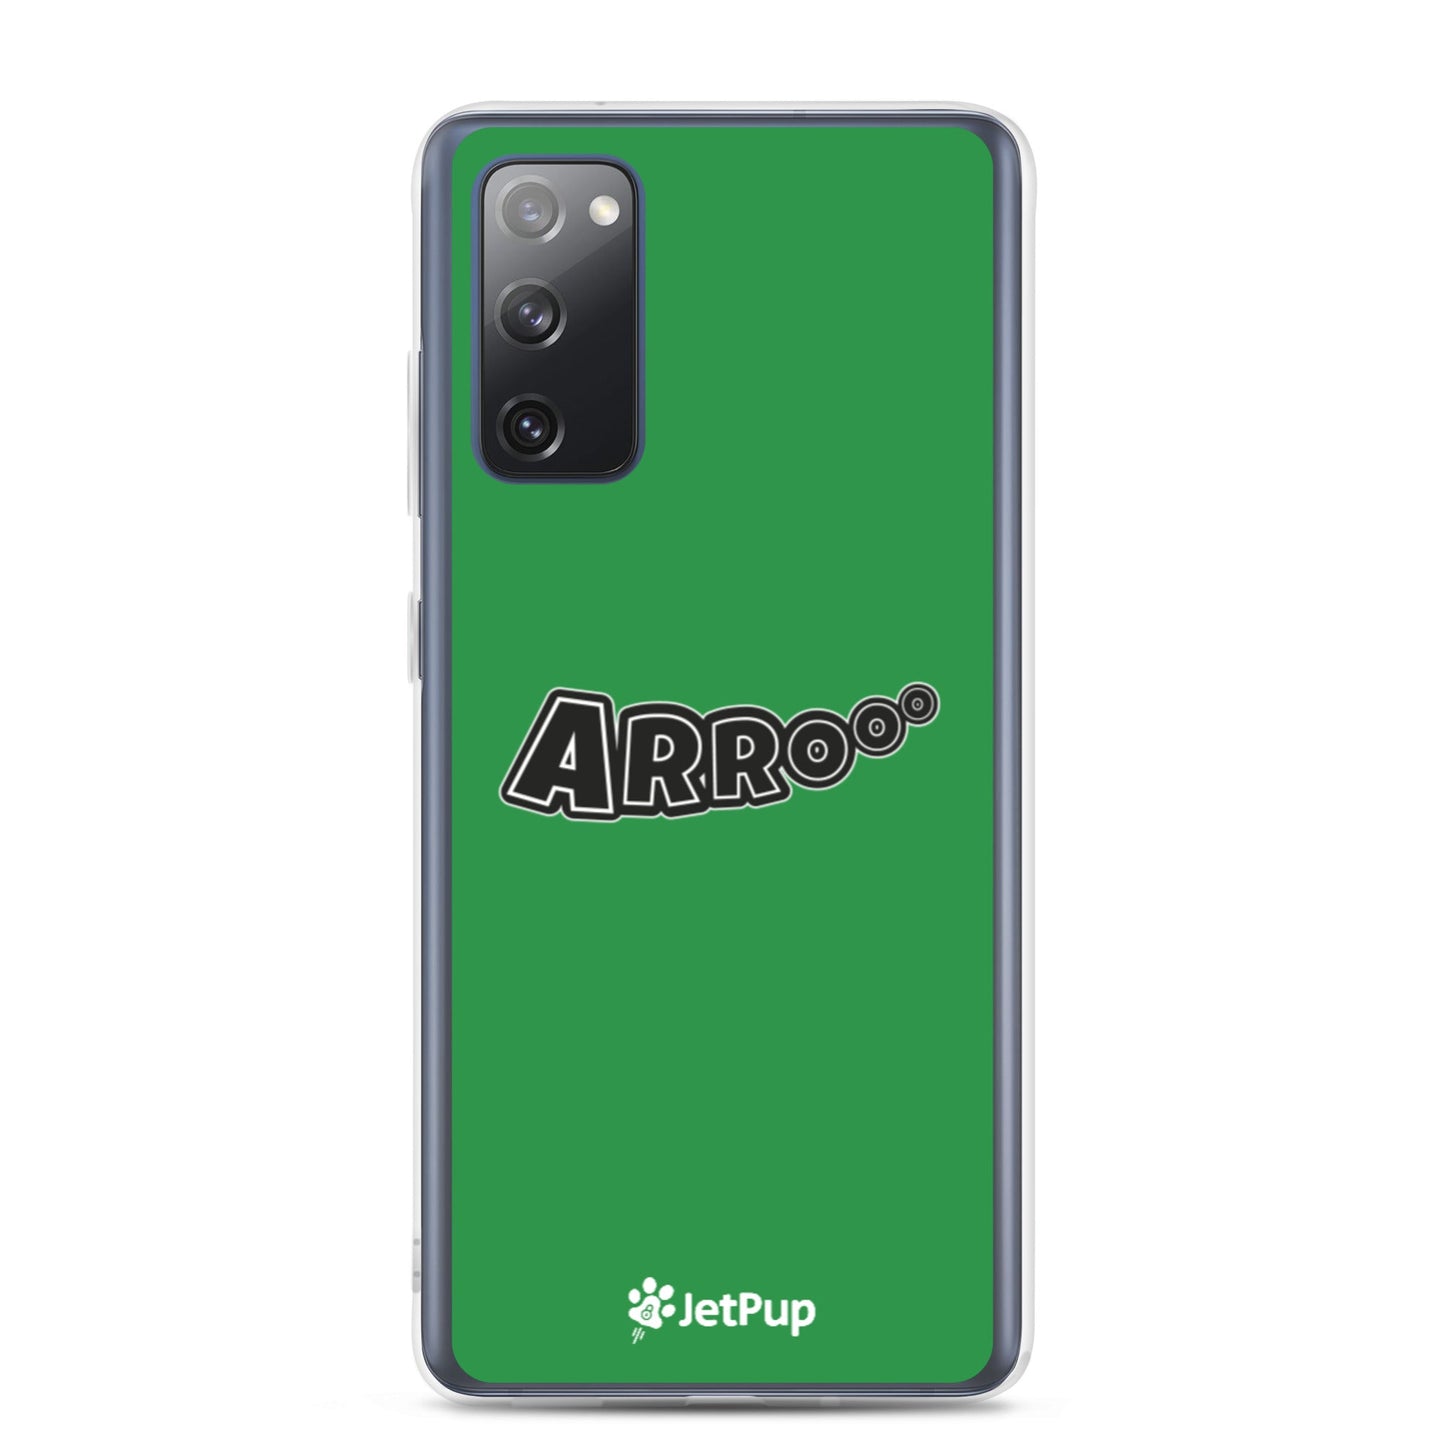 Arrooo Samsung Case - Green - JetPup